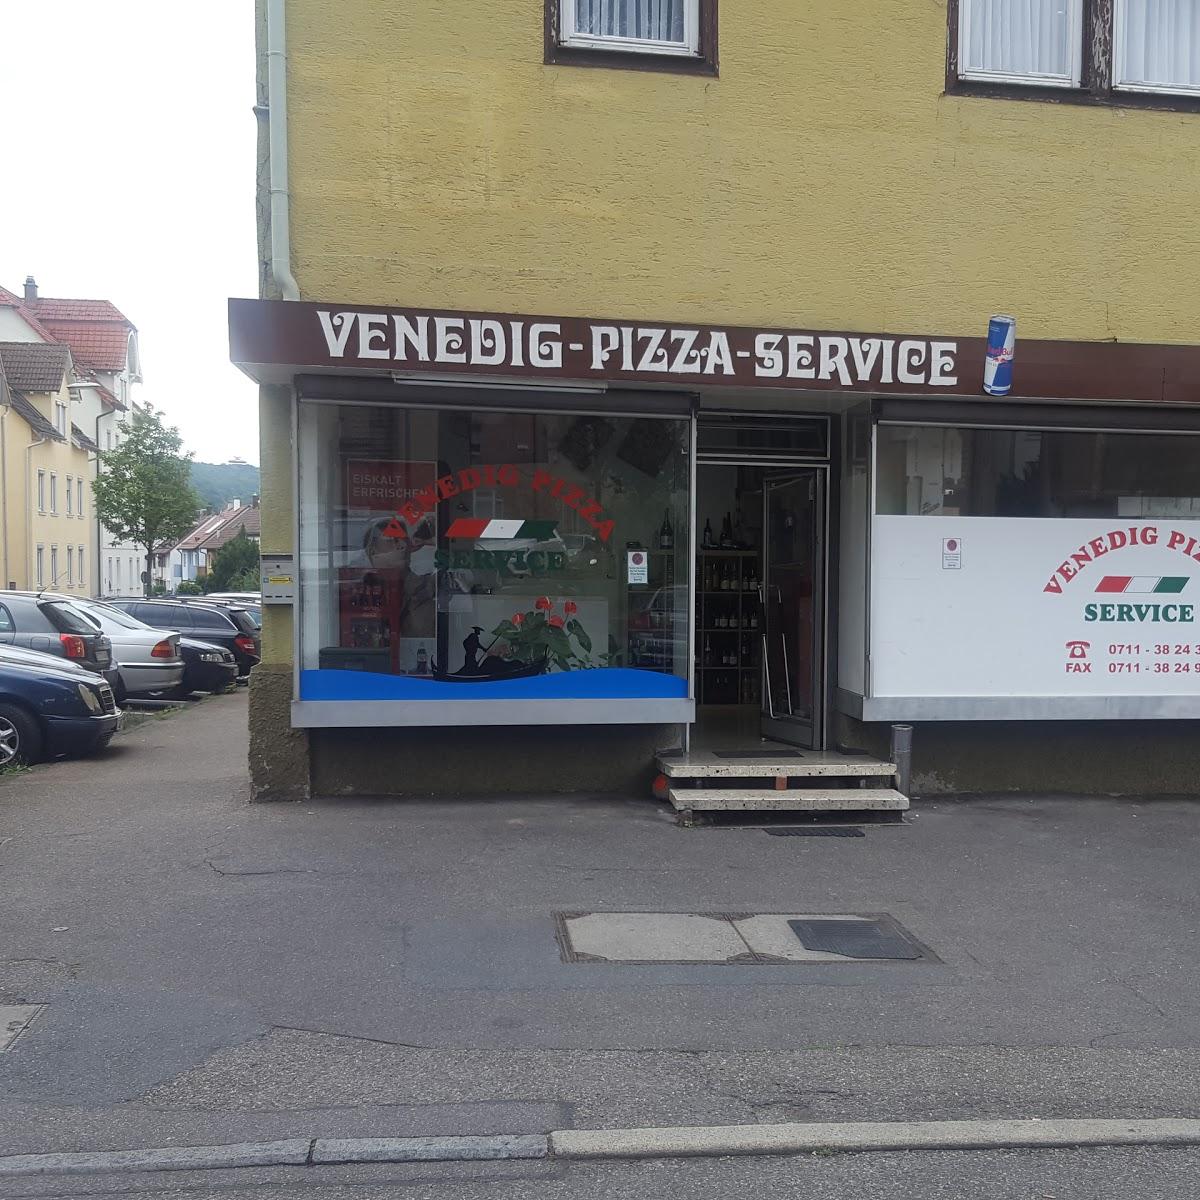 Restaurant "Venedig Pizza-Service" in Esslingen am Neckar